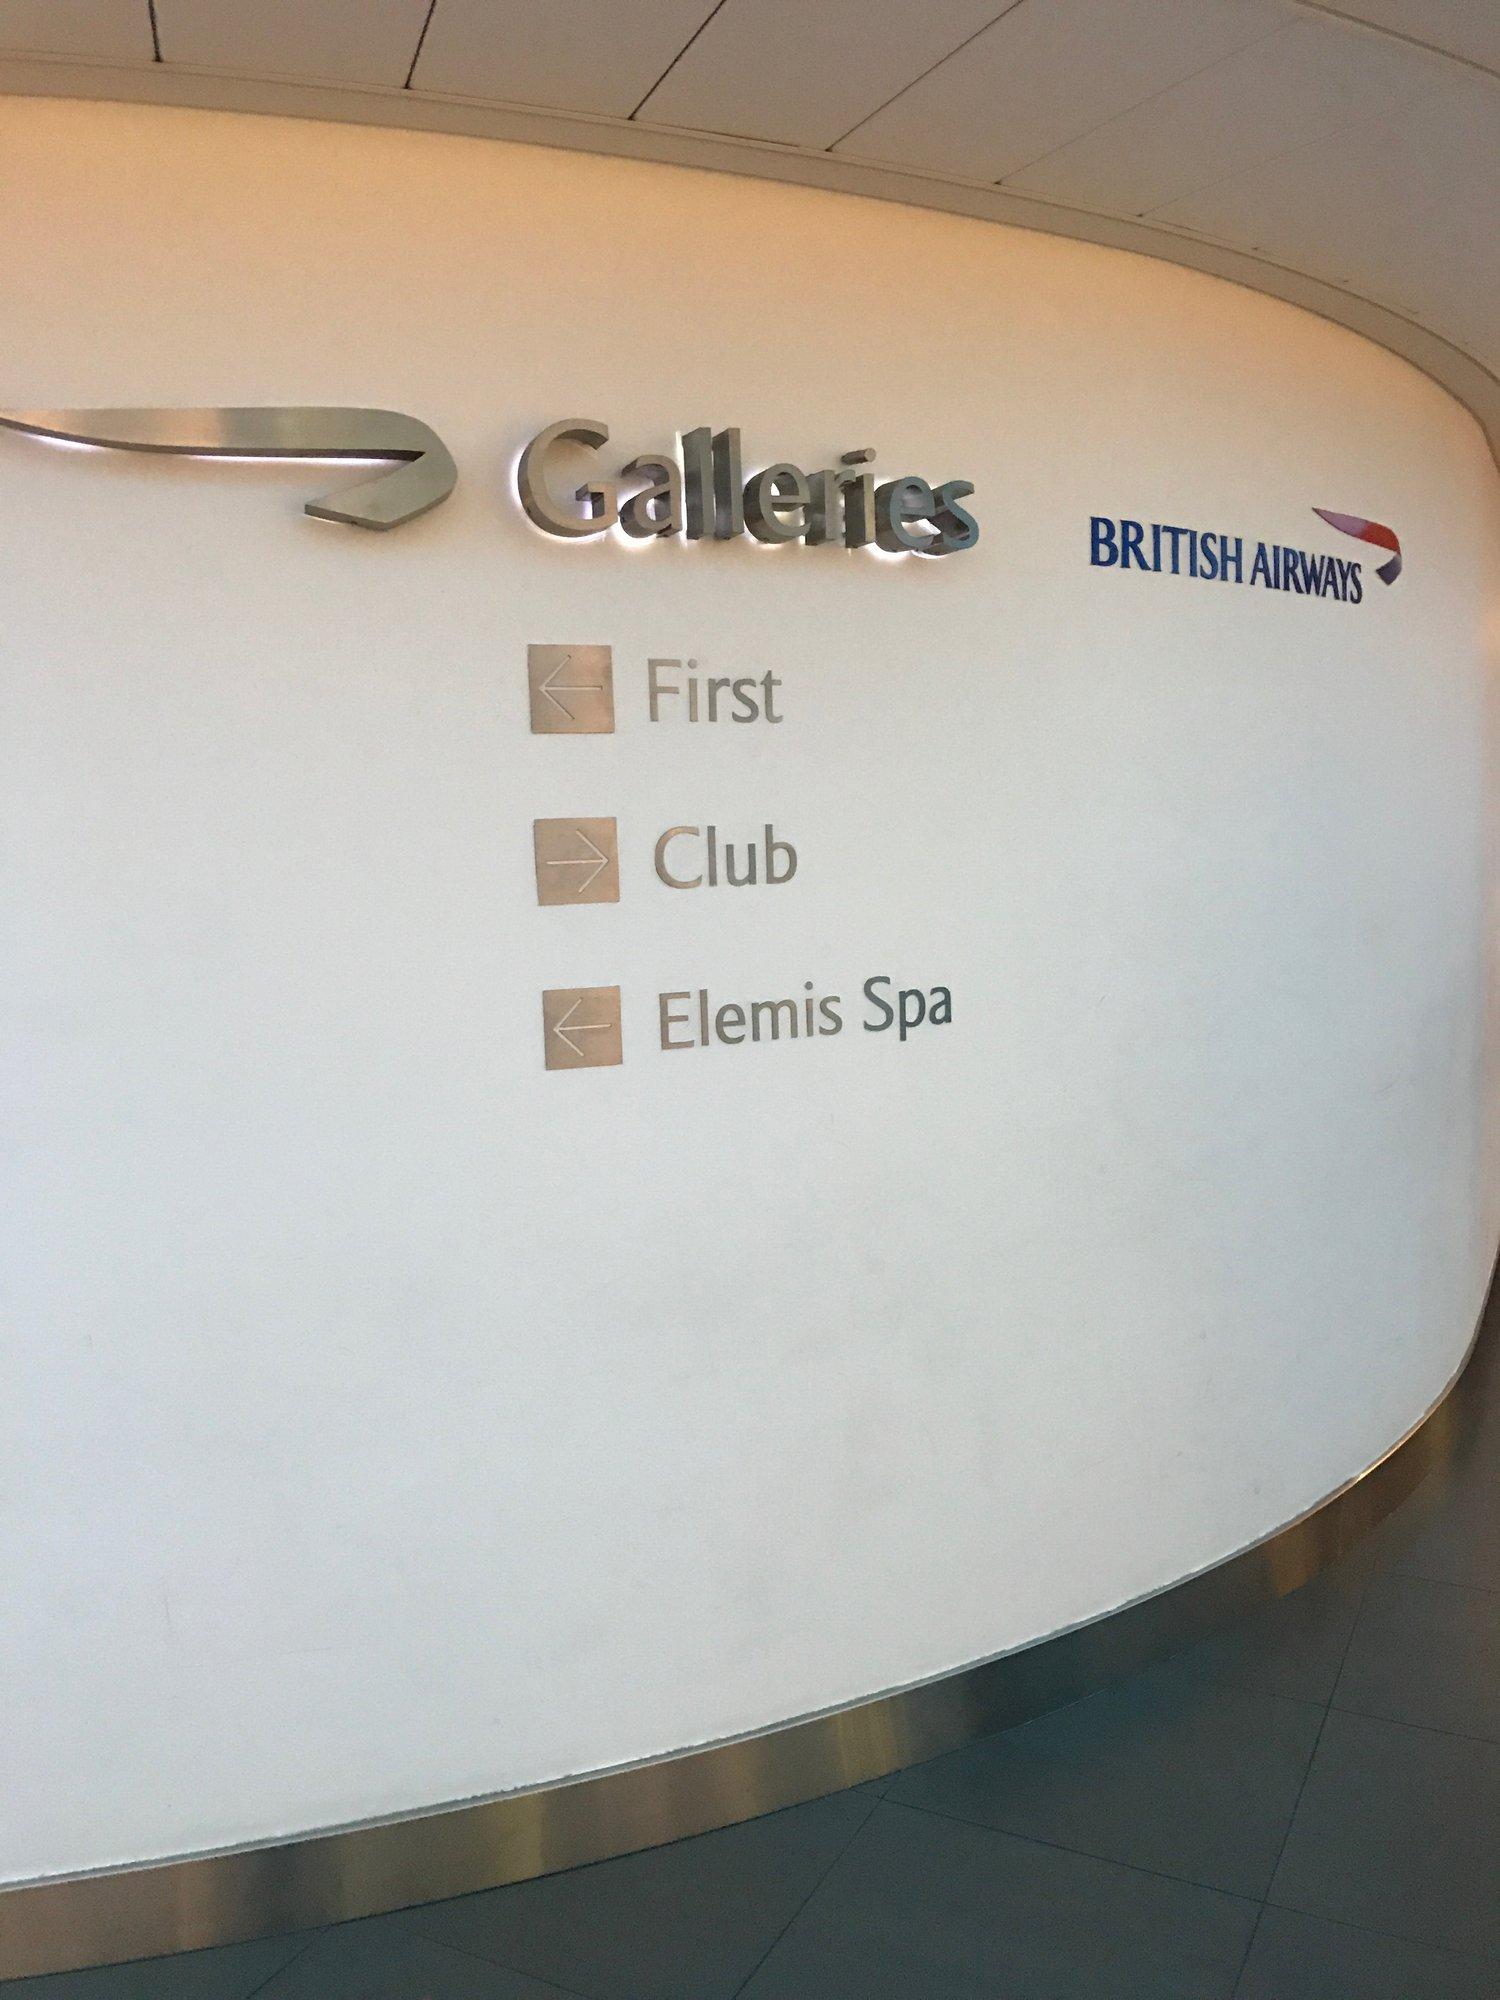 British Airways Galleries First Lounge image 22 of 38